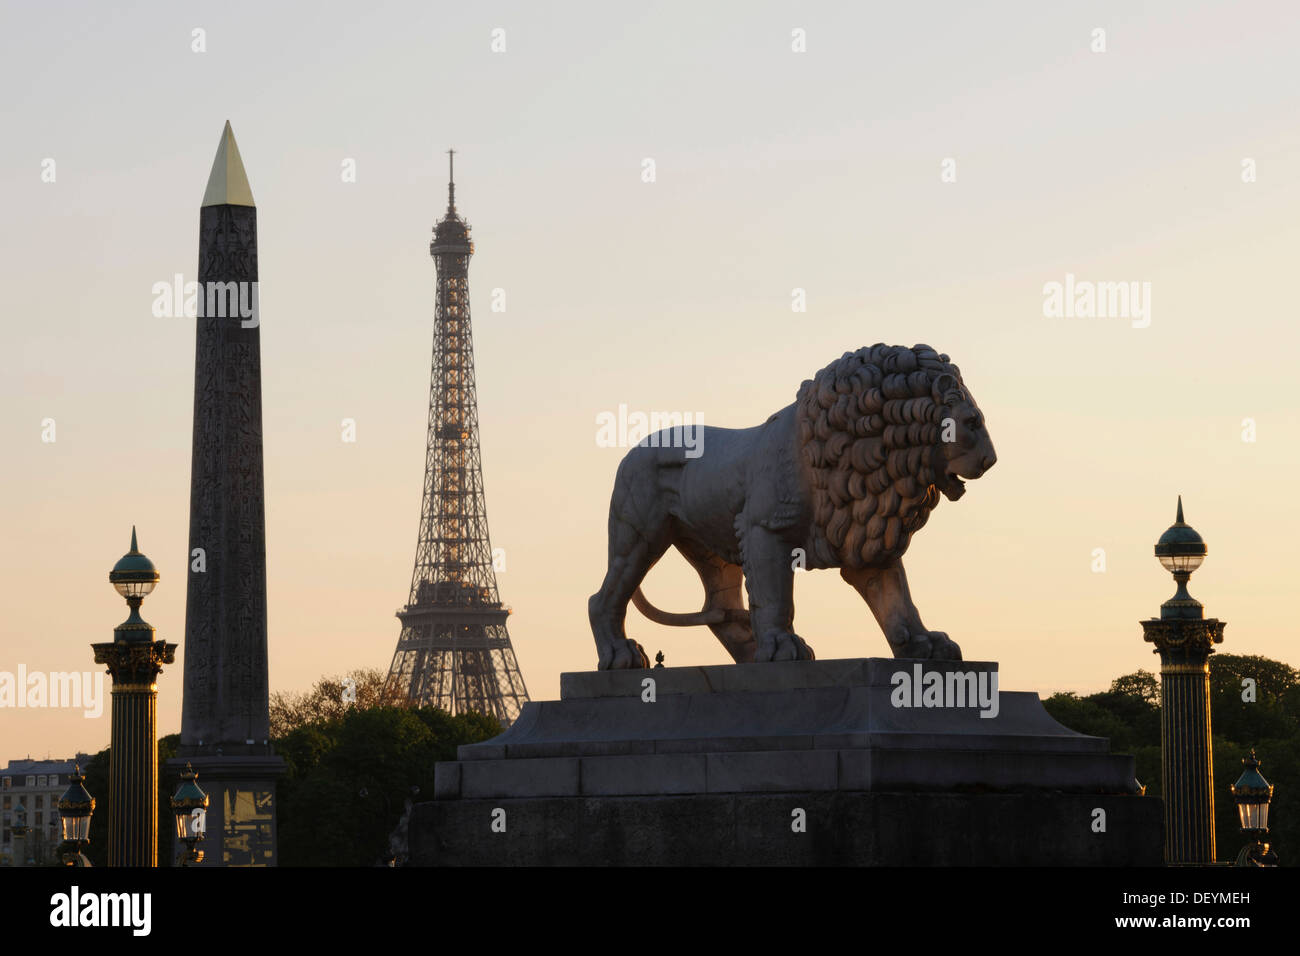 Lion sculpture and obelisk on the Place de la Concorde, Eiffel Tower, Tour Eiffel at back, Paris, Ile-de-France, France Stock Photo